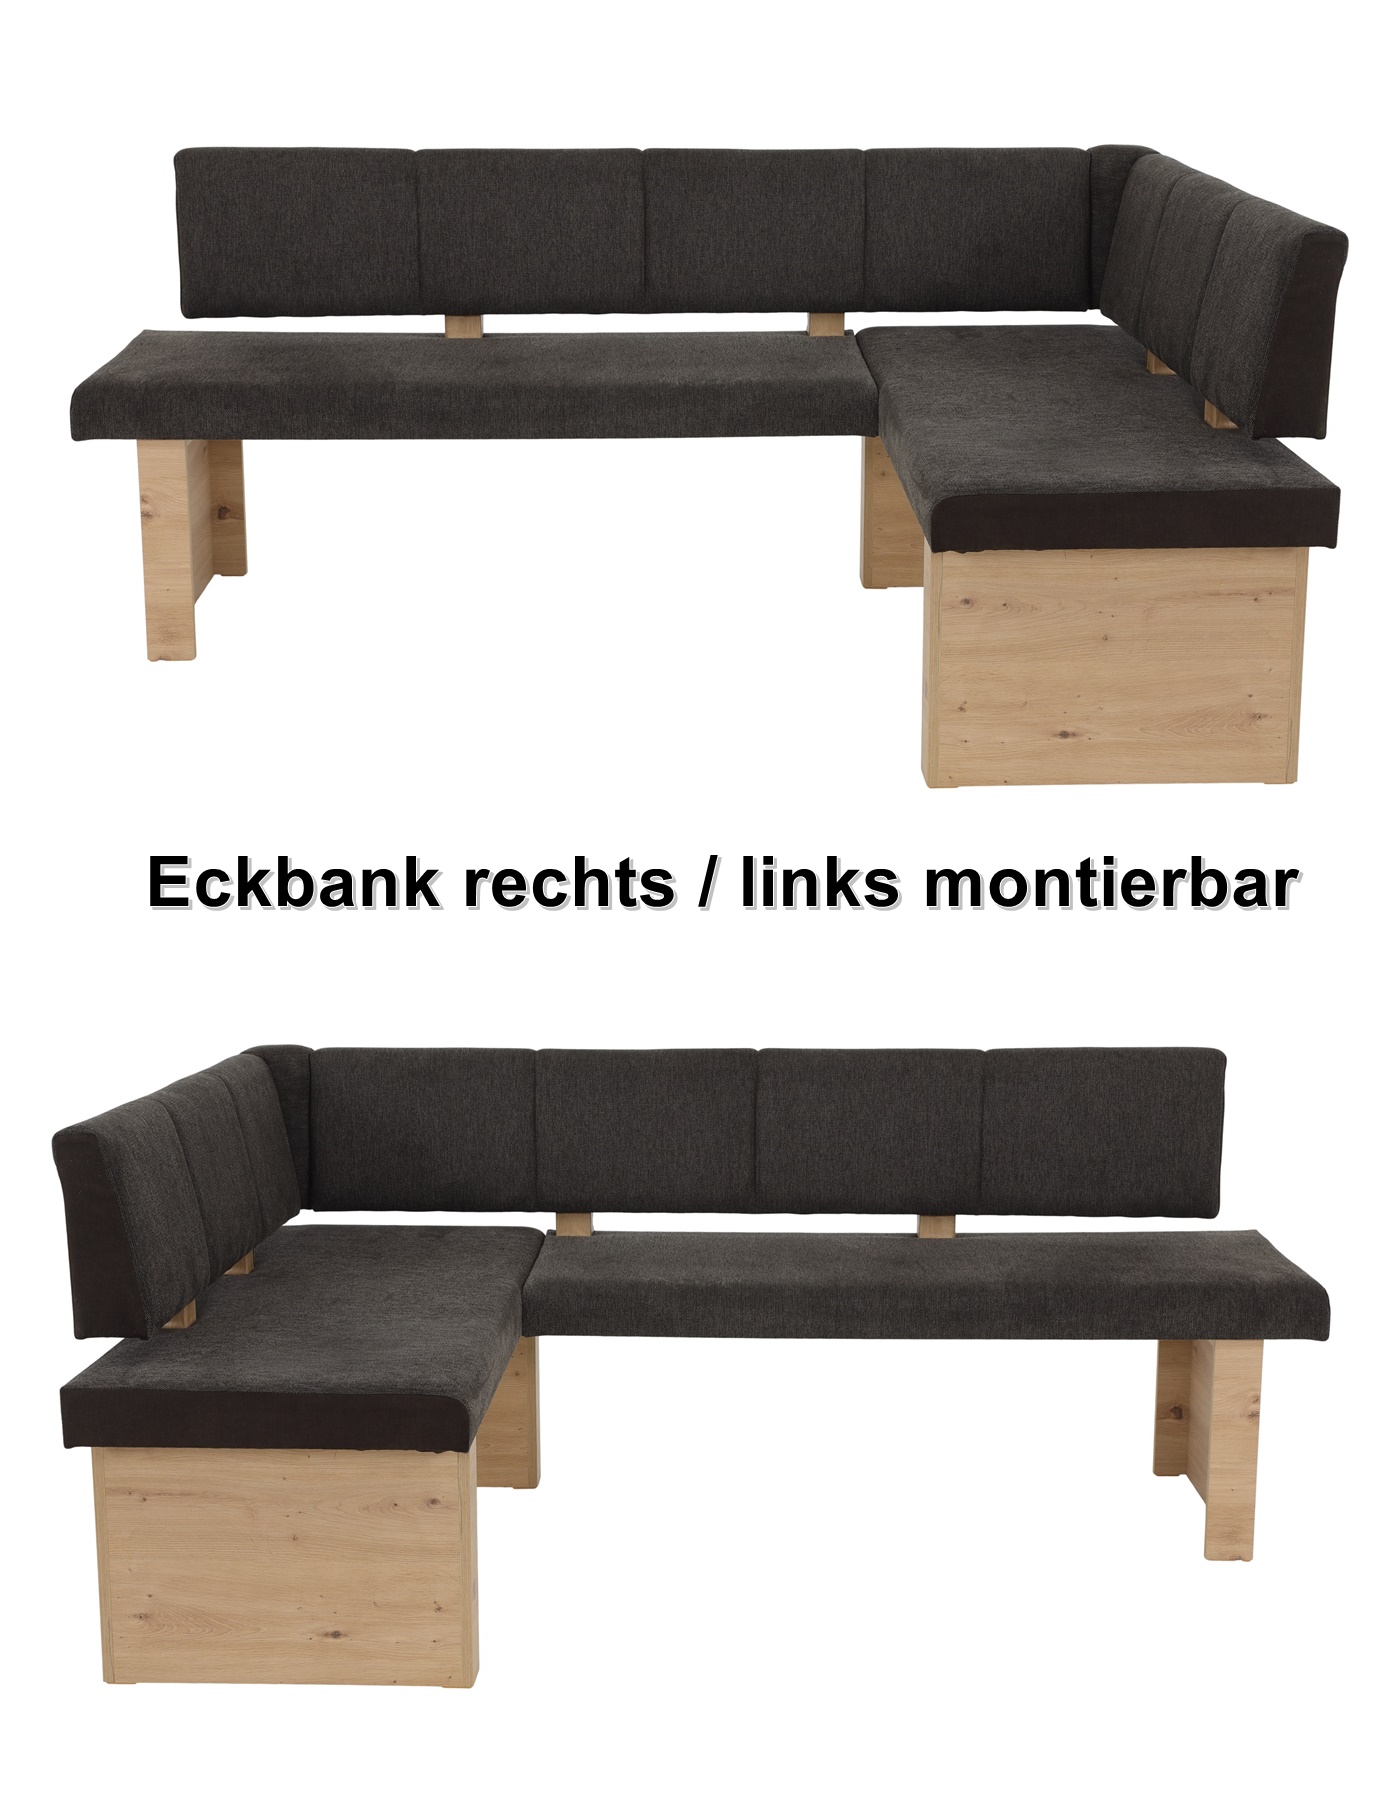 Webstoff Eckbank 140x200 re/li Hela montierbar braun von LINN-EB